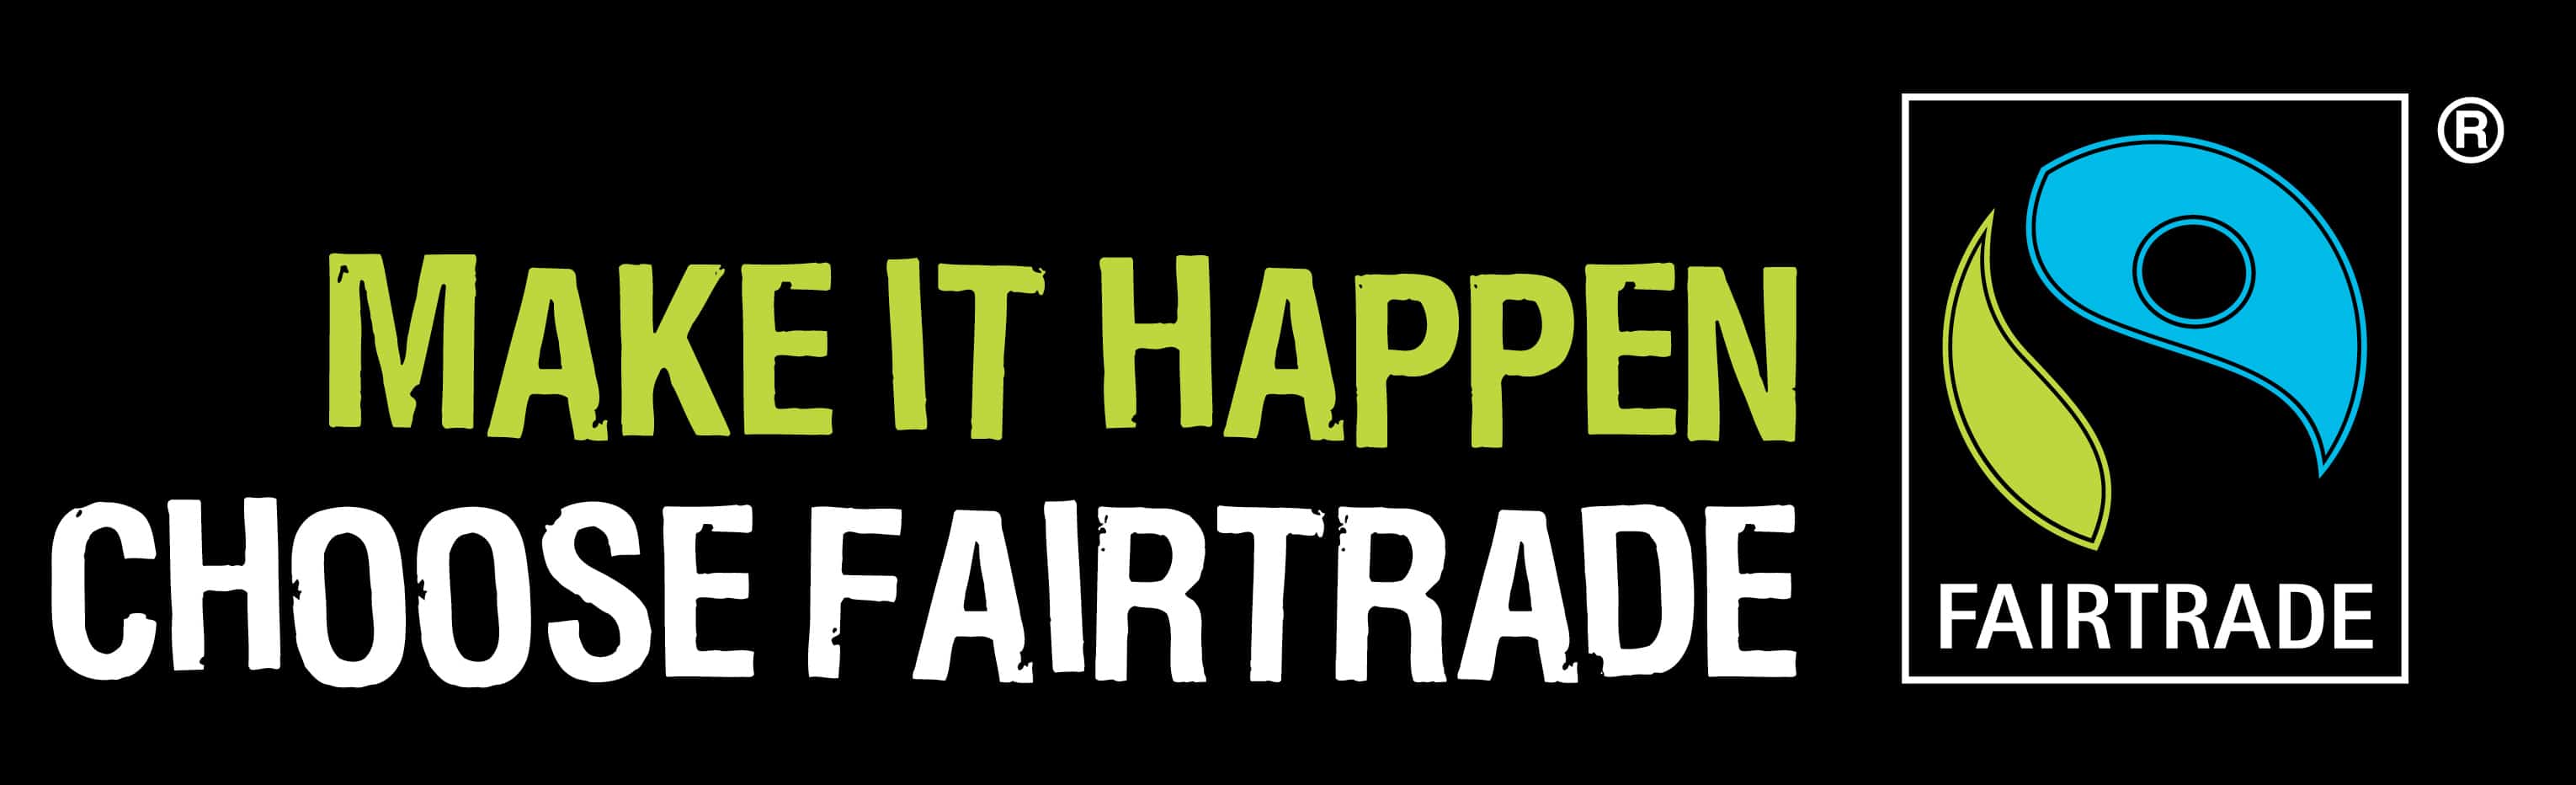 Fairtrade-banner.jpg